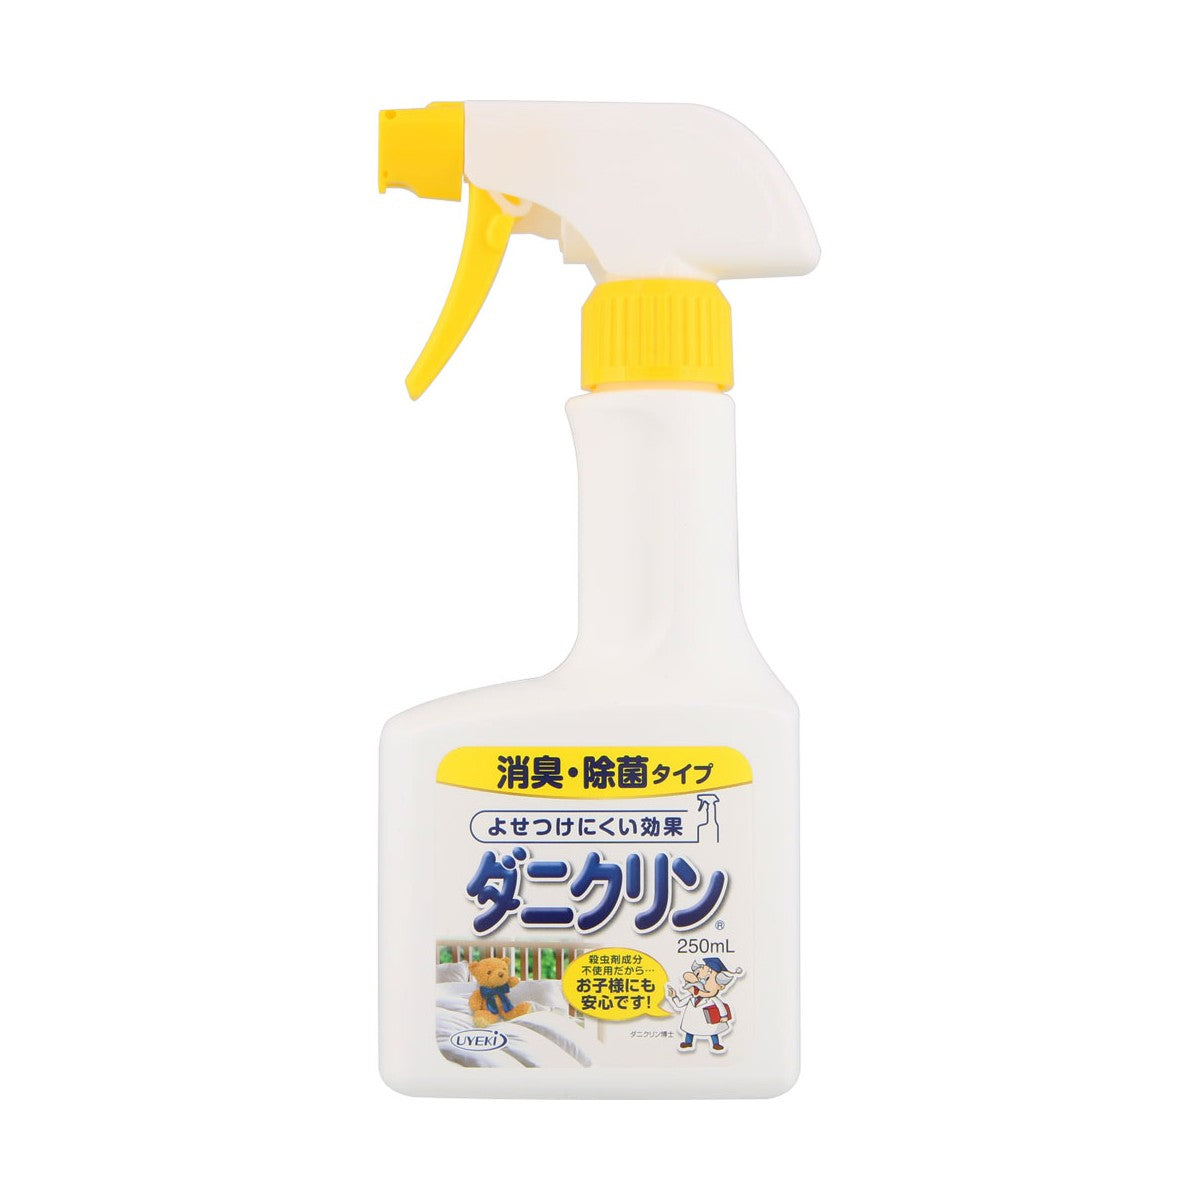 Dust Mite Repellent & Allergen Sterilization Spray (More Types)